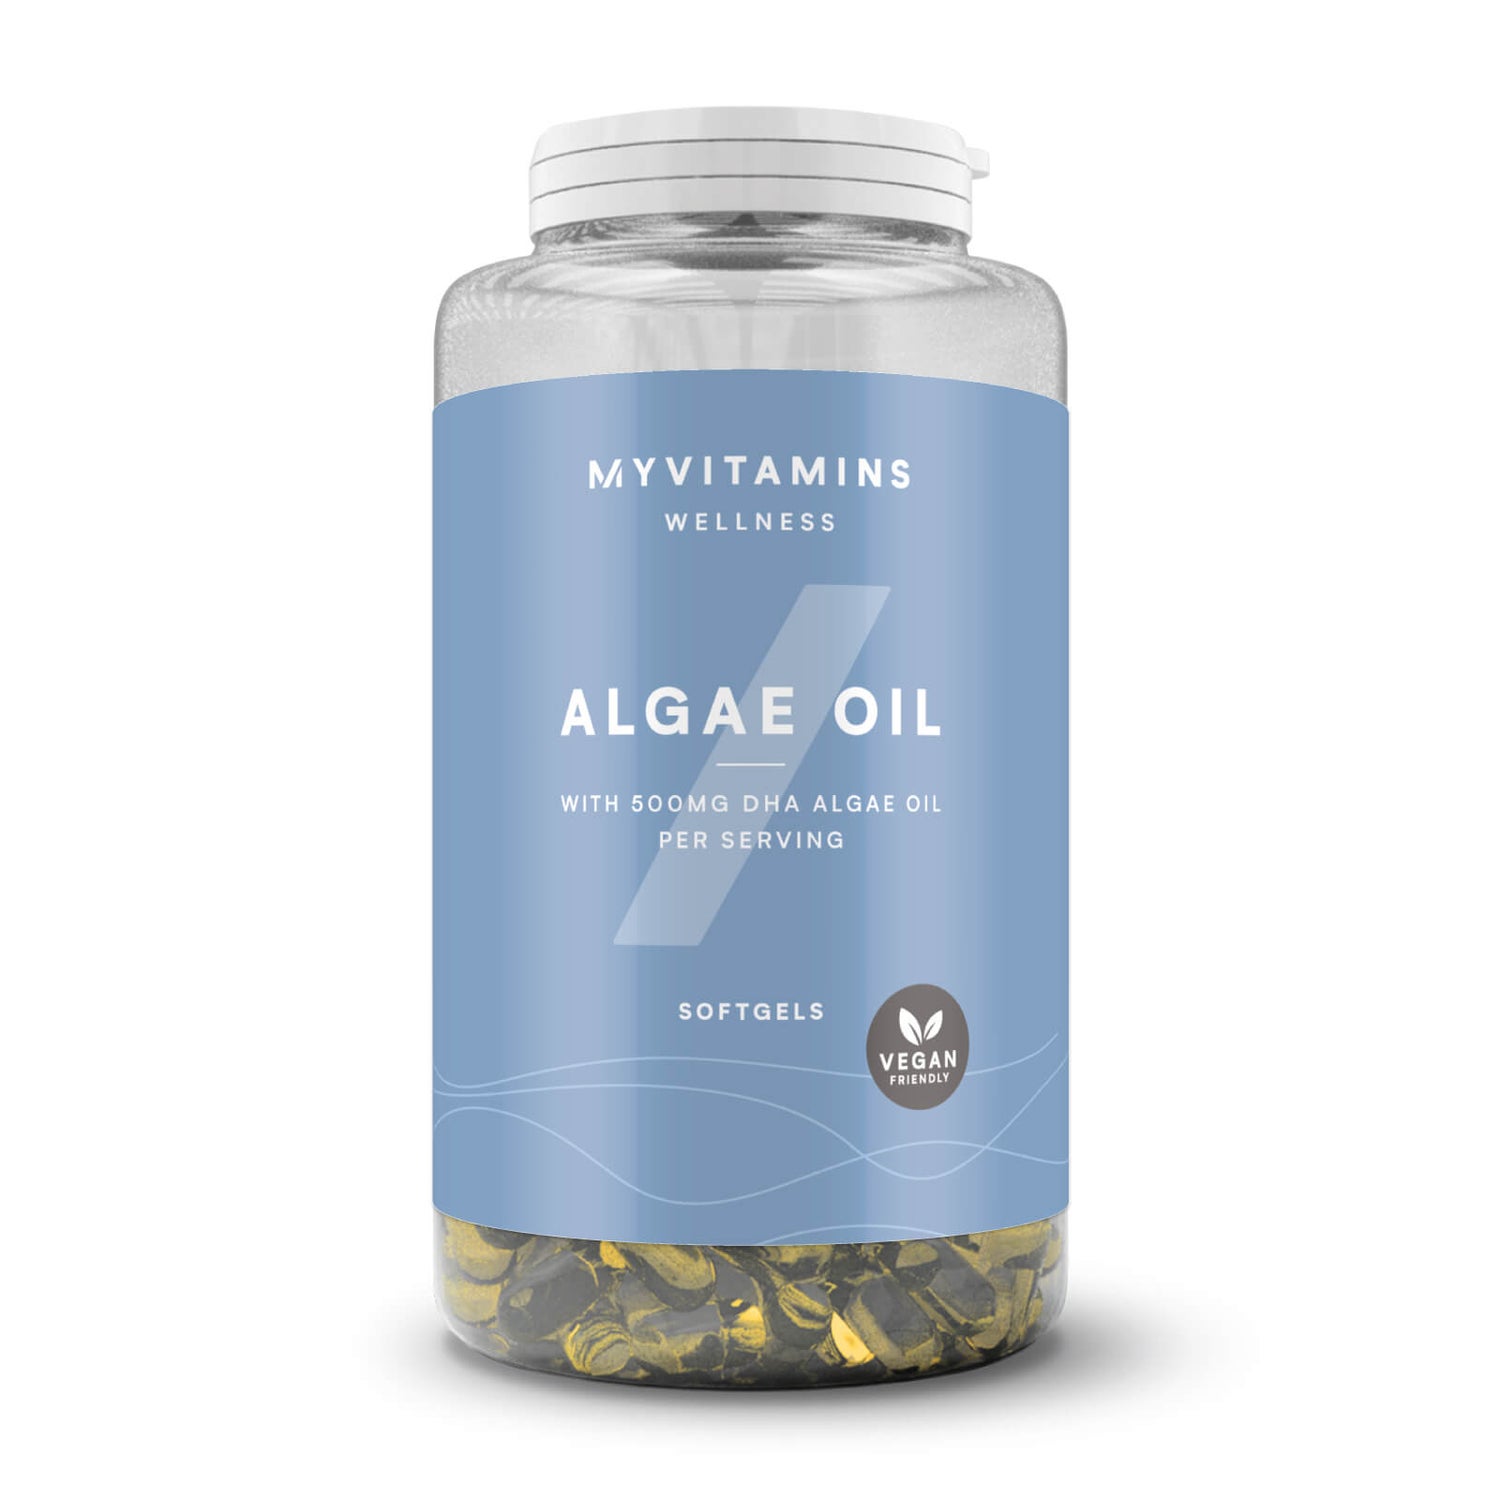 Myvitamins Algae Oil - 30gel kapsule